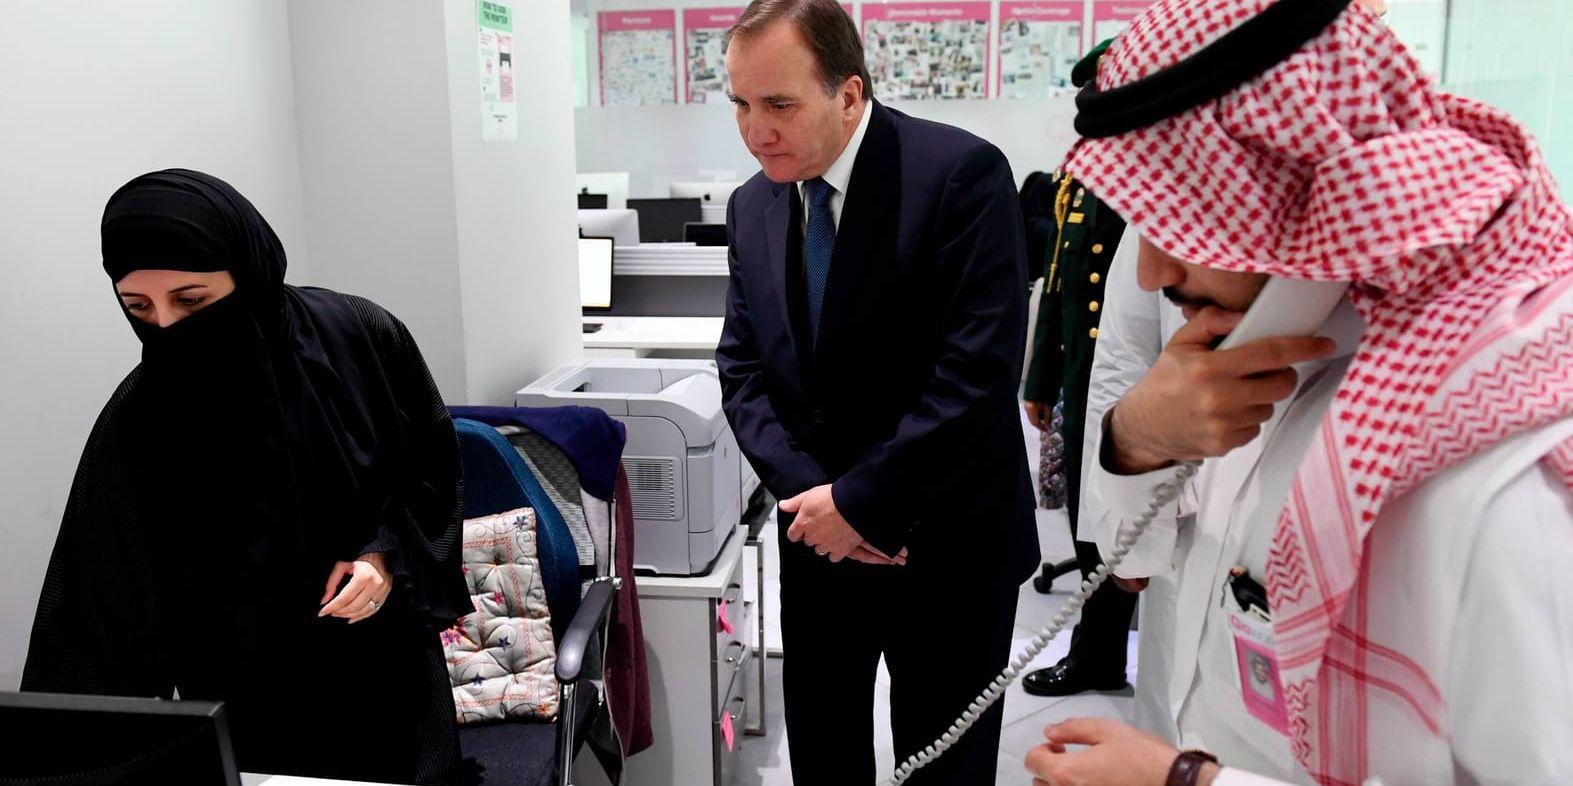 Statsminister Stefan Löfven (S) på besök hos företaget Glowork i Riyadh. Bolaget har som affärsidé att anställa kvinnor. Arkivbild.